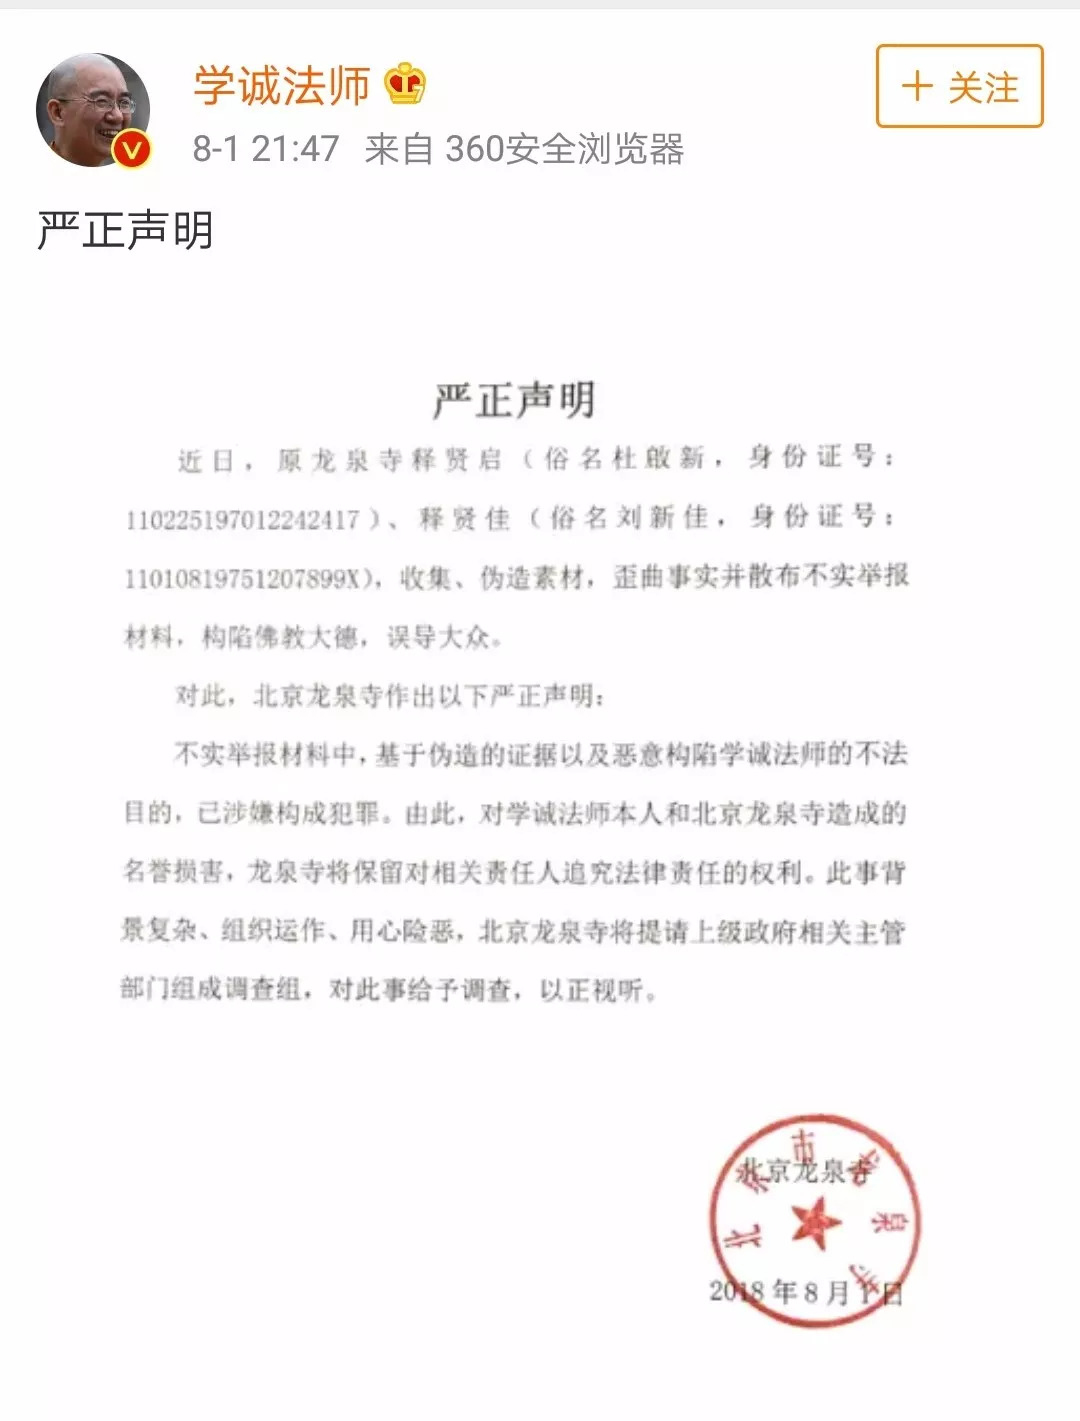 国家宗教事务局通报关于对举报学诚和北京龙泉寺有关问题的调查核实